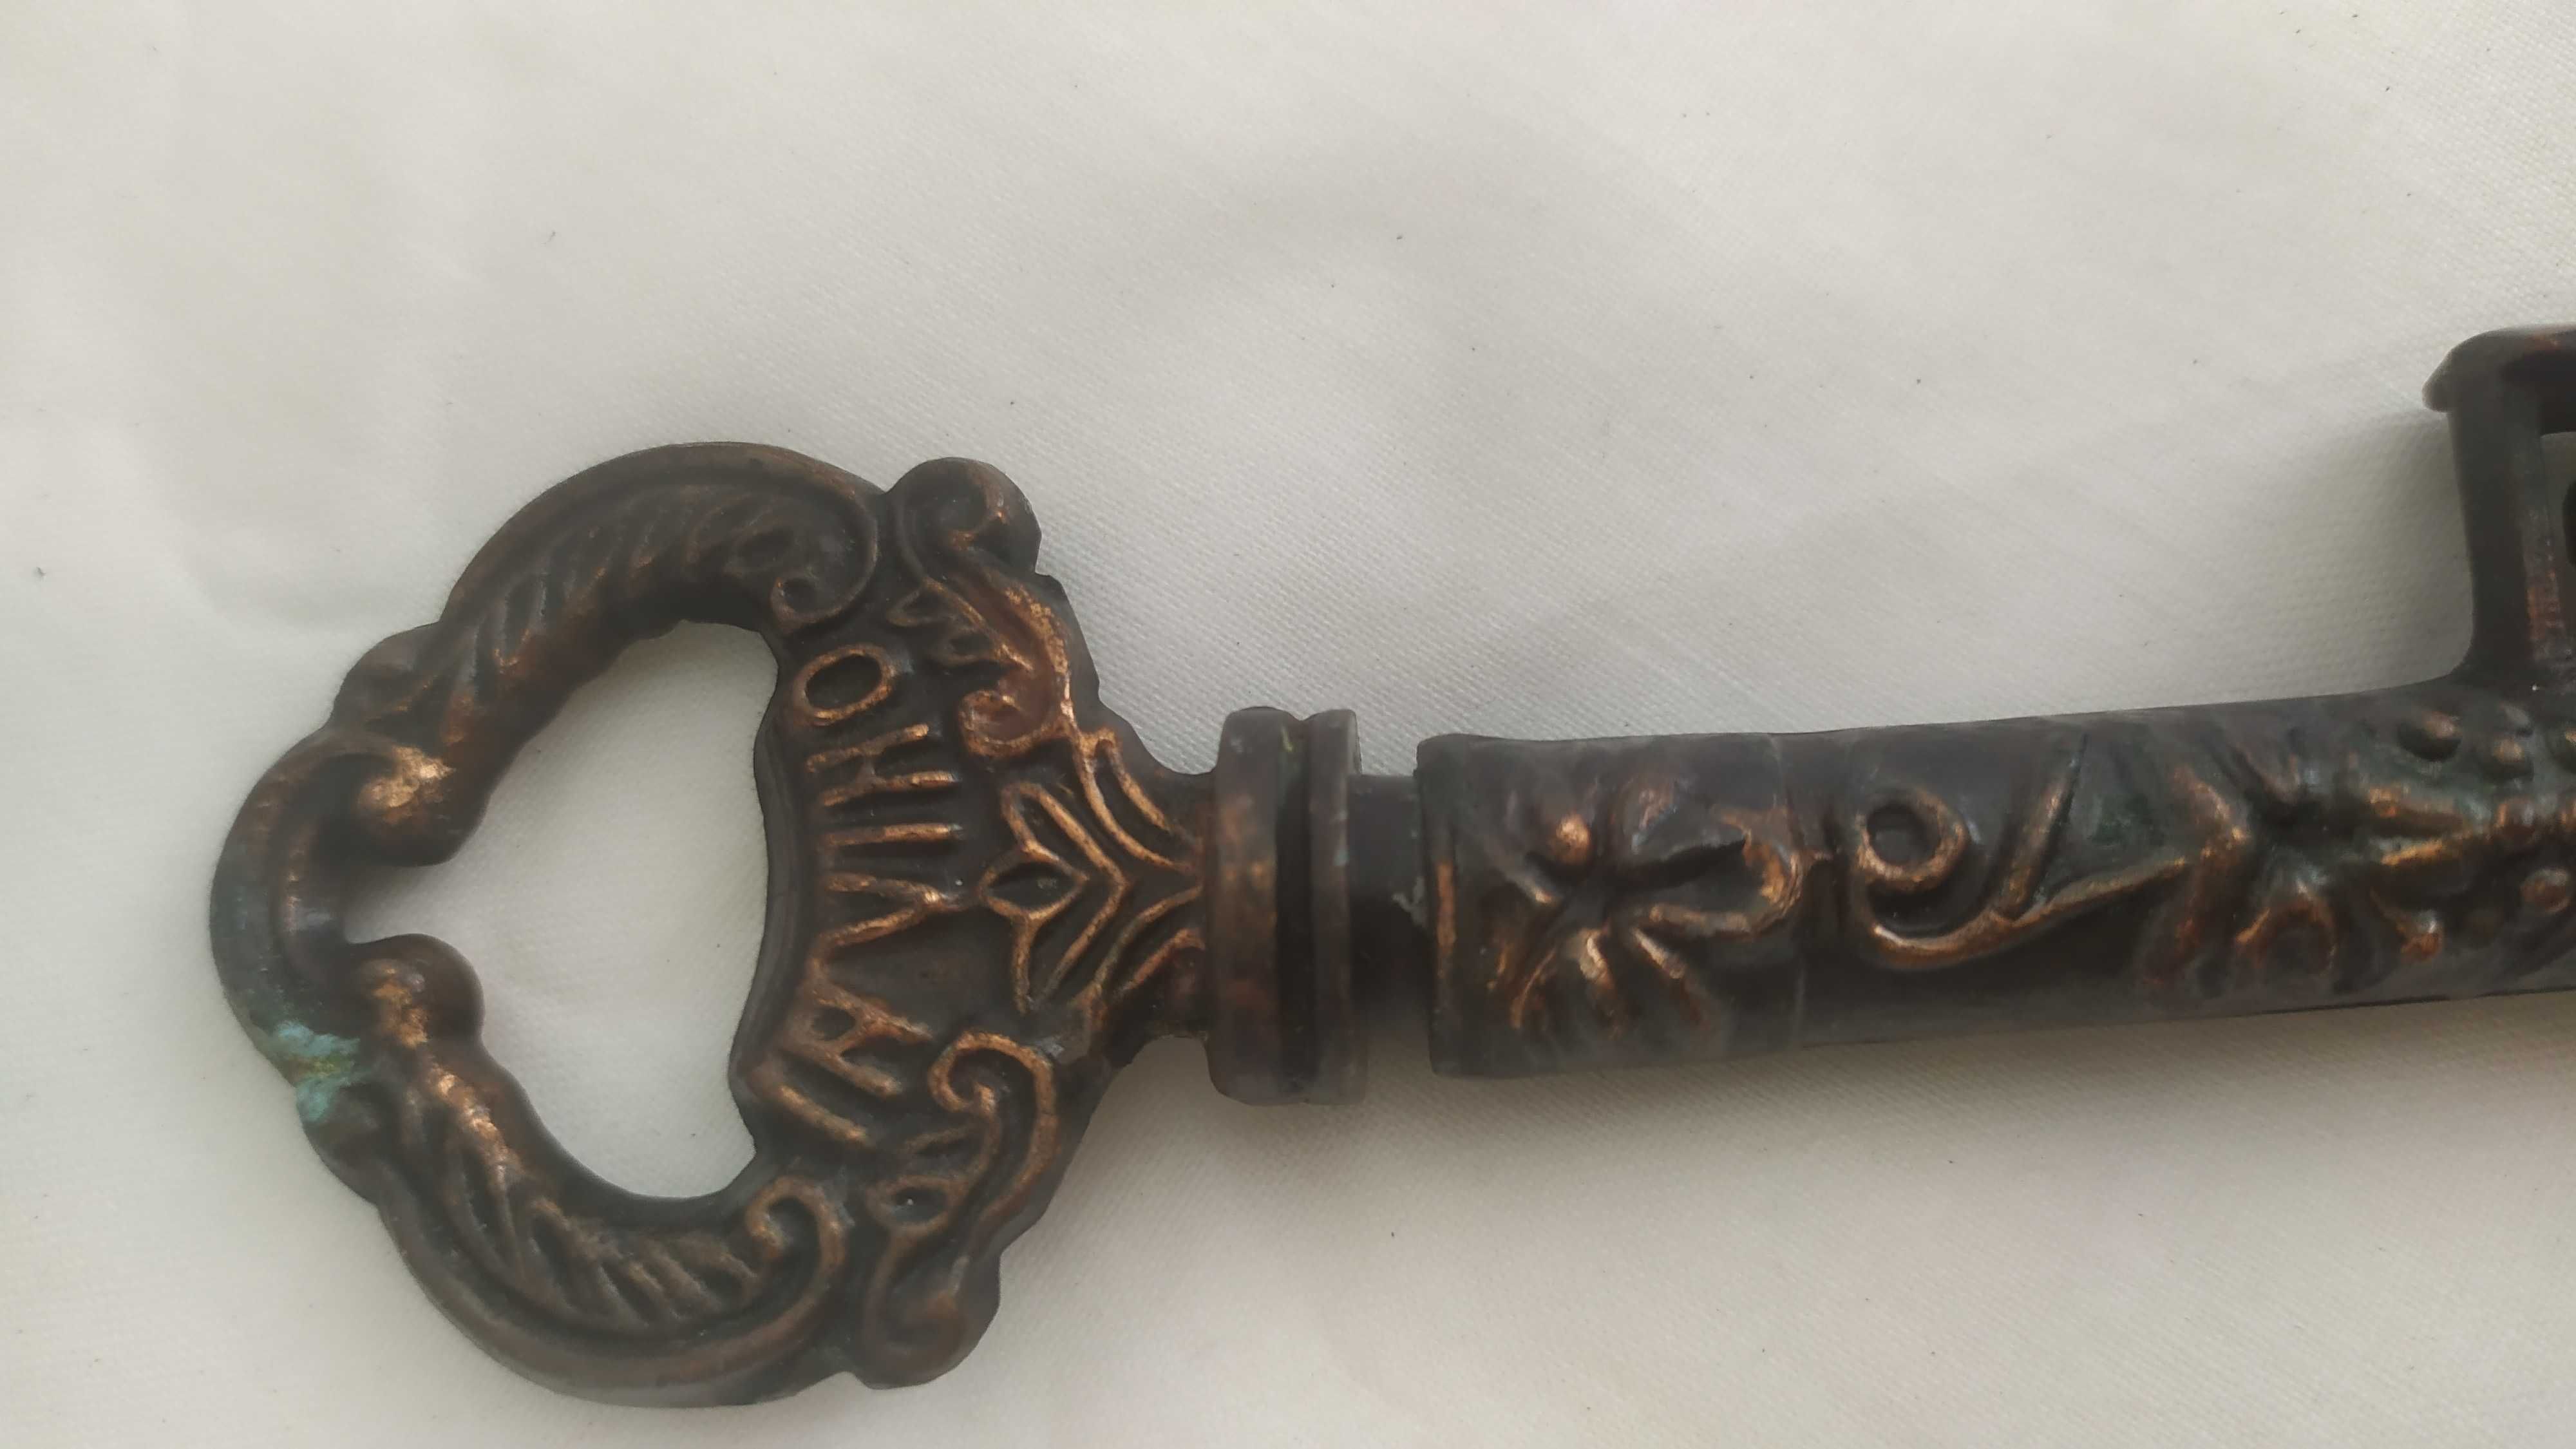 Korkociąg w formie klucza mosiężnego inco veritas, z lat 70-tych